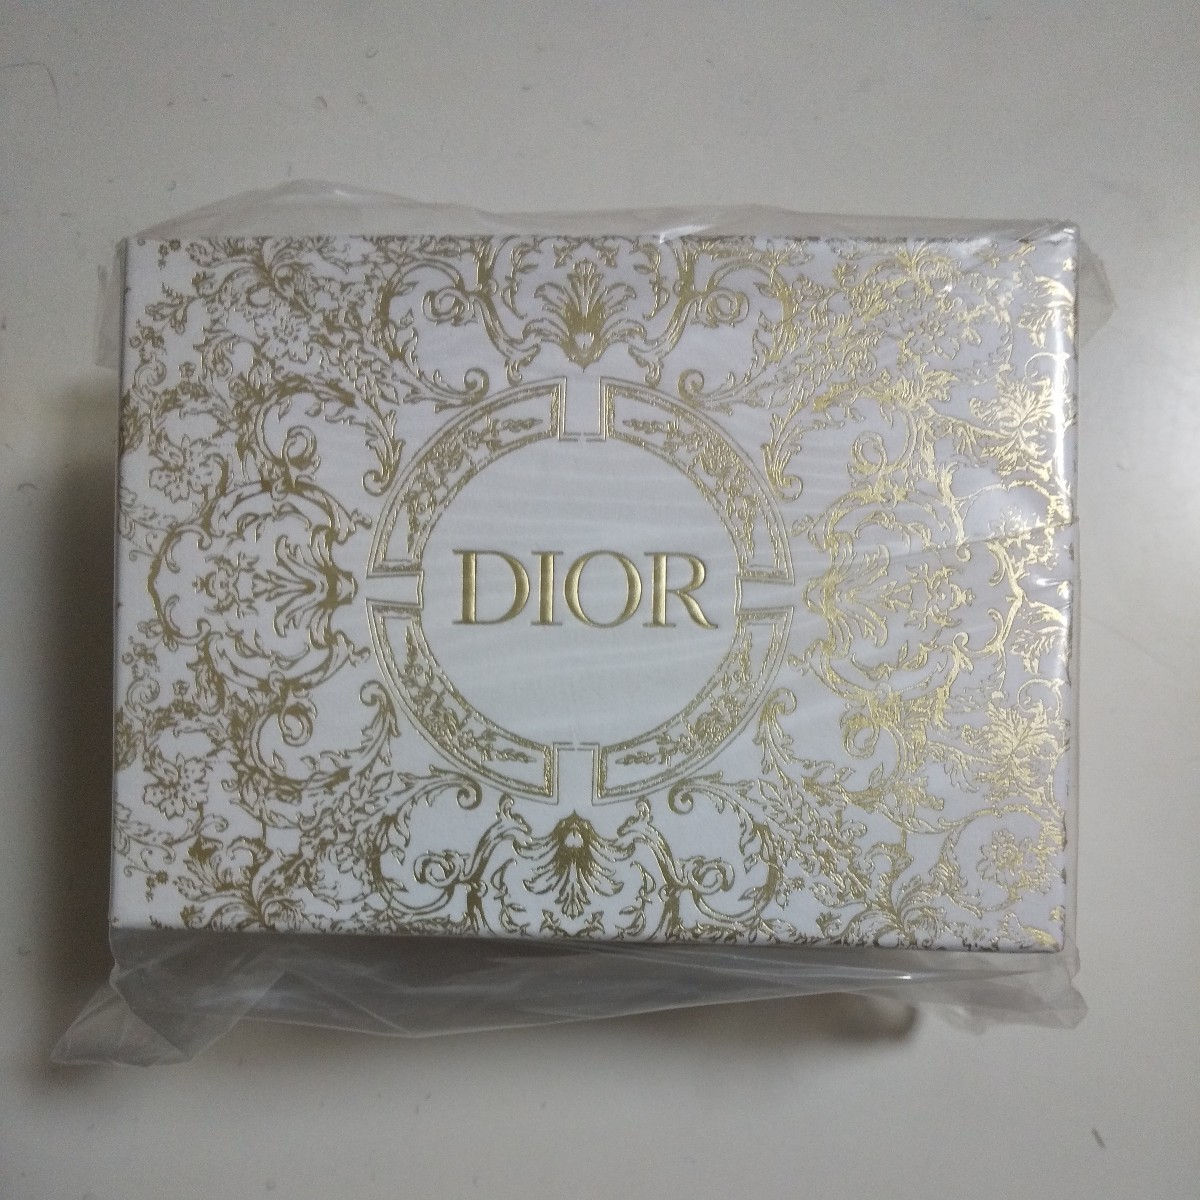 即決 新品 Dior ディオール ホリデー限定 オリジナルボックス ジュエリーボックス 非売品 ノベルティ_画像2